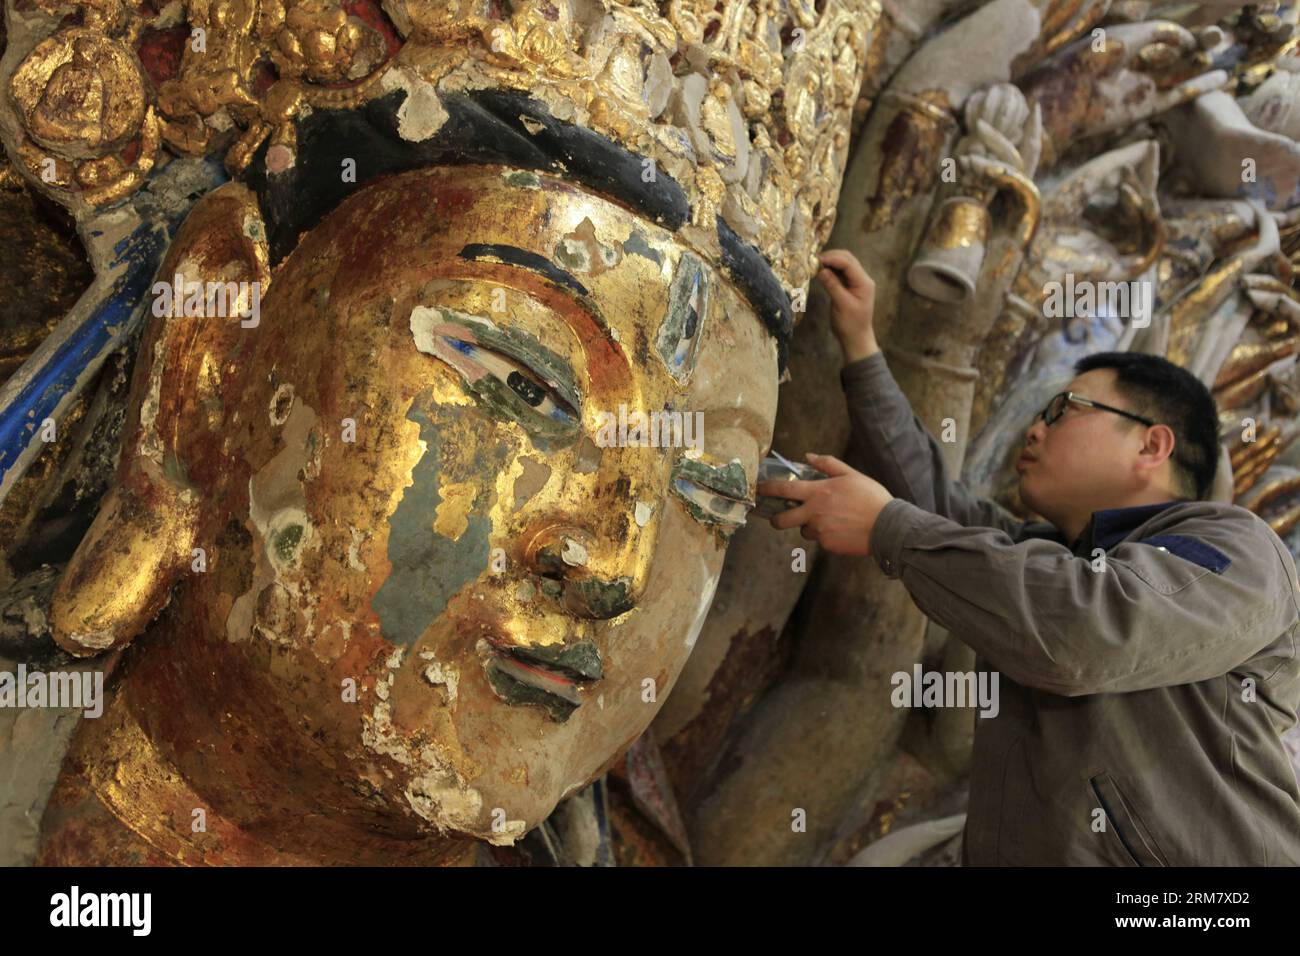 (140318) -- CHONGQING, 18. März 2014 (Xinhua) -- Ein Mitarbeiter entfernt die abblätternde Goldfolie von der Skulptur von Qianshou Guanyin (Bodhisattva mit tausend Händen) auf dem Mount Baoding im Bezirk Dazu in der Gemeinde Chongqing im Südwesten Chinas, 18. März 2014. Die Skulptur, die in der 7,7 Meter hohen und 12,5 Meter breiten Höhle geschnitzt wurde, könnte auf die Southern Song Dynastie (1127 bis 1279) zurückgehen. Im Laufe der Jahrhunderte ist die Farbe der Skulptur verblasst, Teile der Goldfolie haben sich abgelöst und Risse sind aufgetaucht. Und so wurde ein Restaurierungsprojekt für die buddhistische Statue gestartet Stockfoto